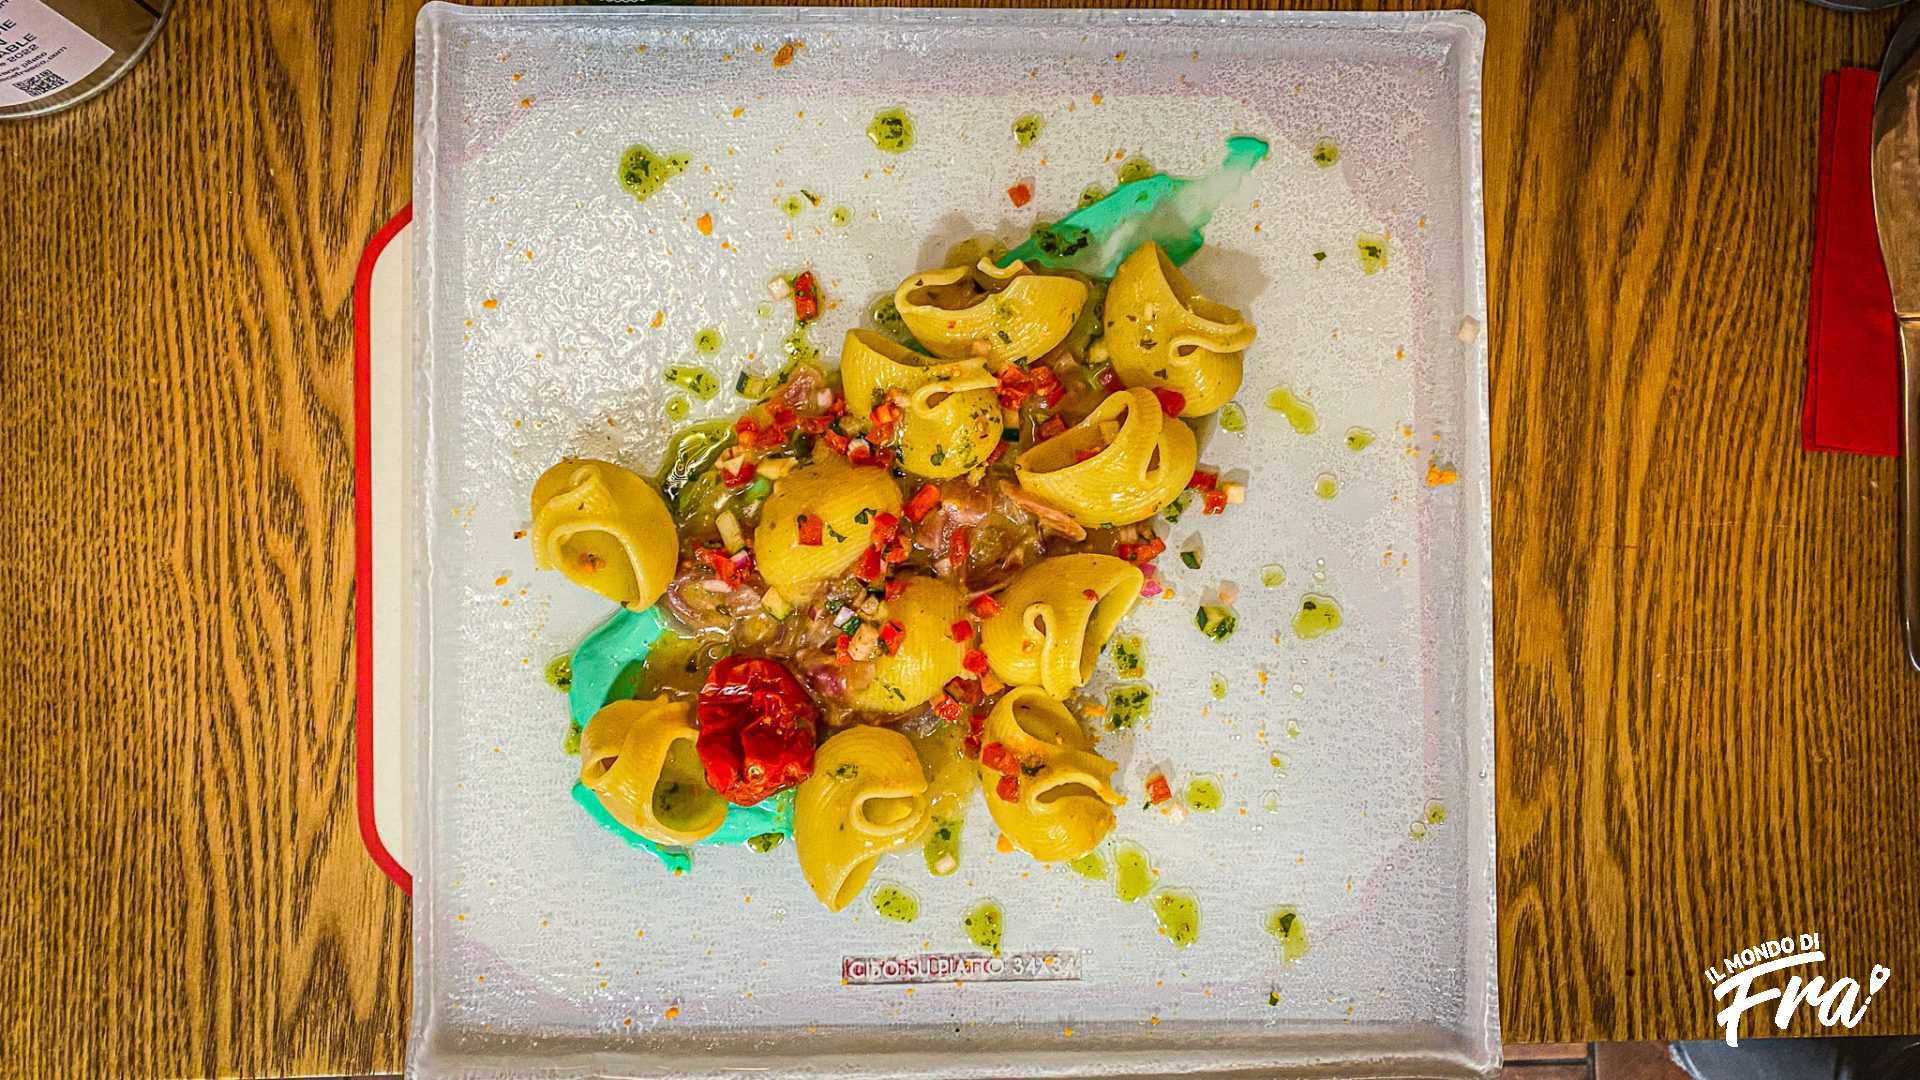 Elaboratorio culinario - Quattro ristoranti in cui mangiare a Livorno